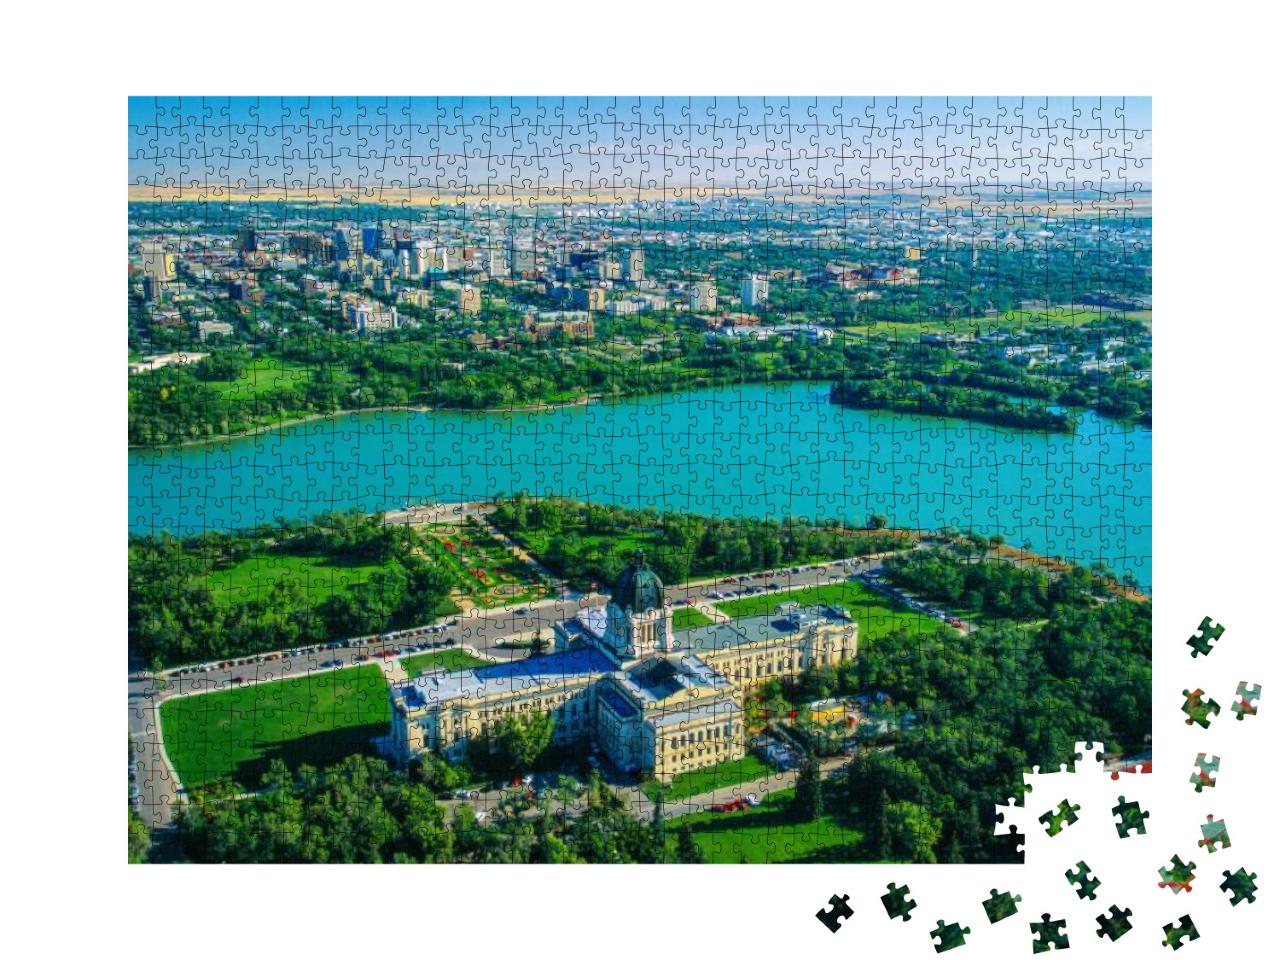 Puzzle 1000 Teile „Wunderschöne Stadt Regina in der Provinz Saskatchewan, Kanada“